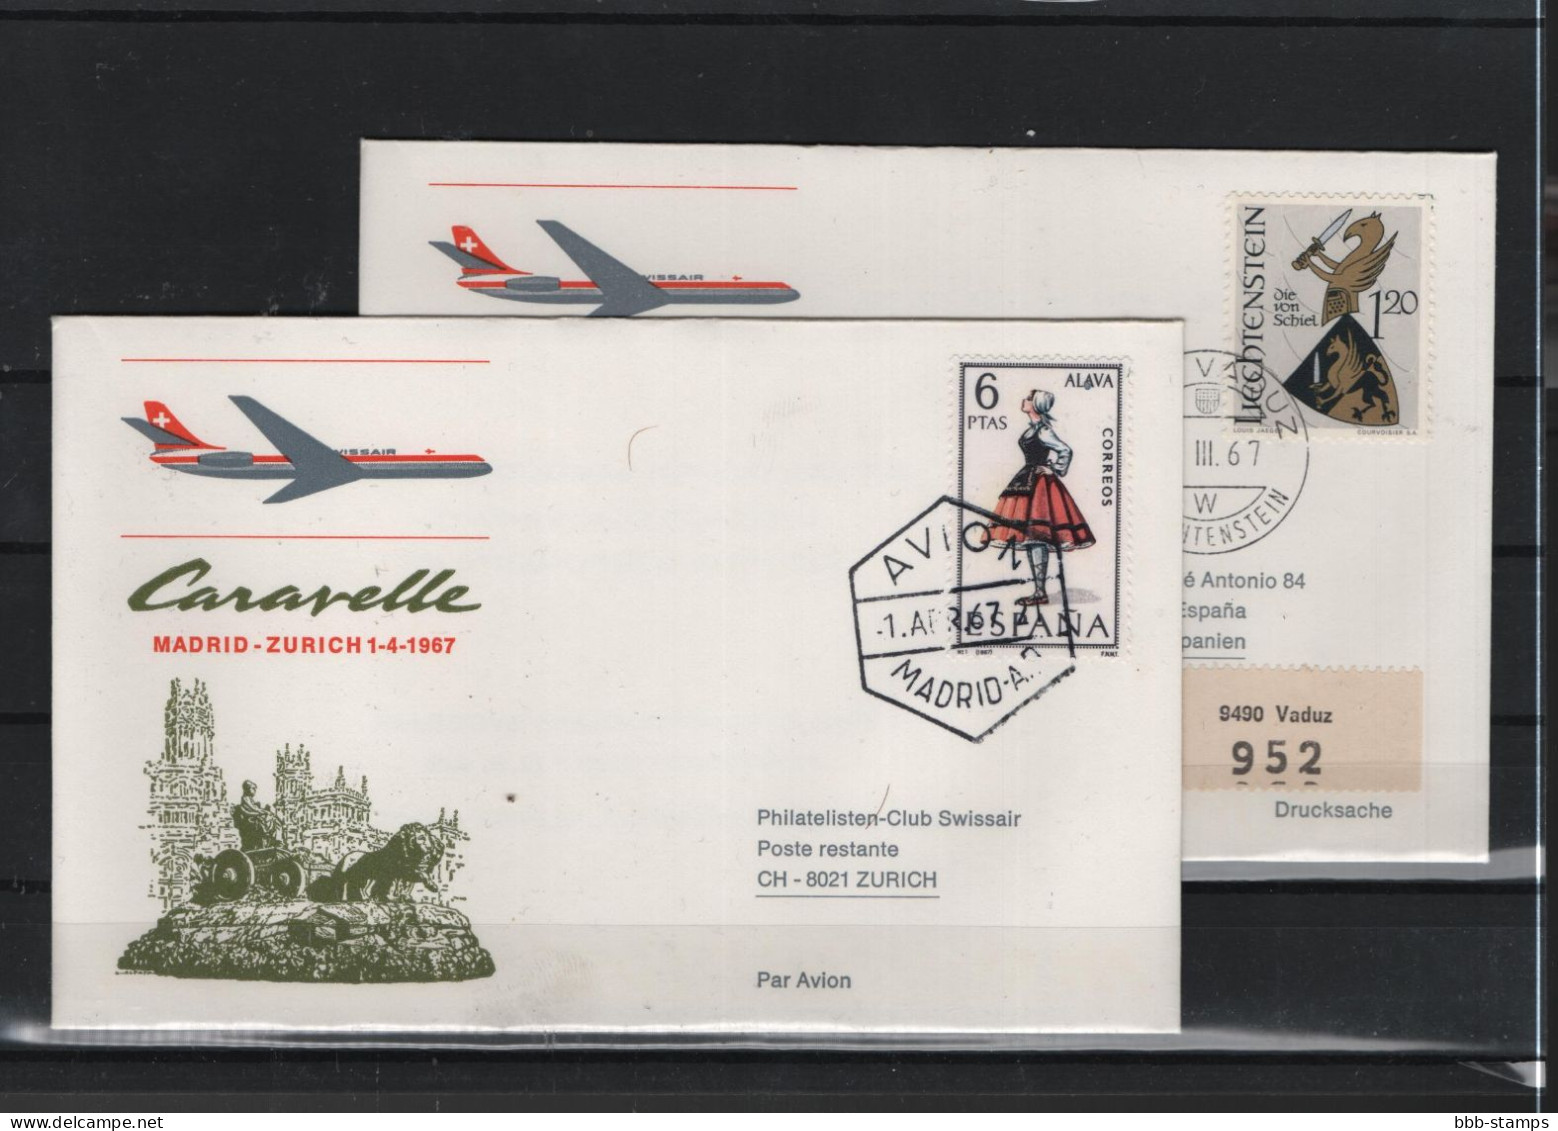 Schweiz Air Mail Swissair  FFC  31.3.1967 Zürich - Madrid - Primi Voli